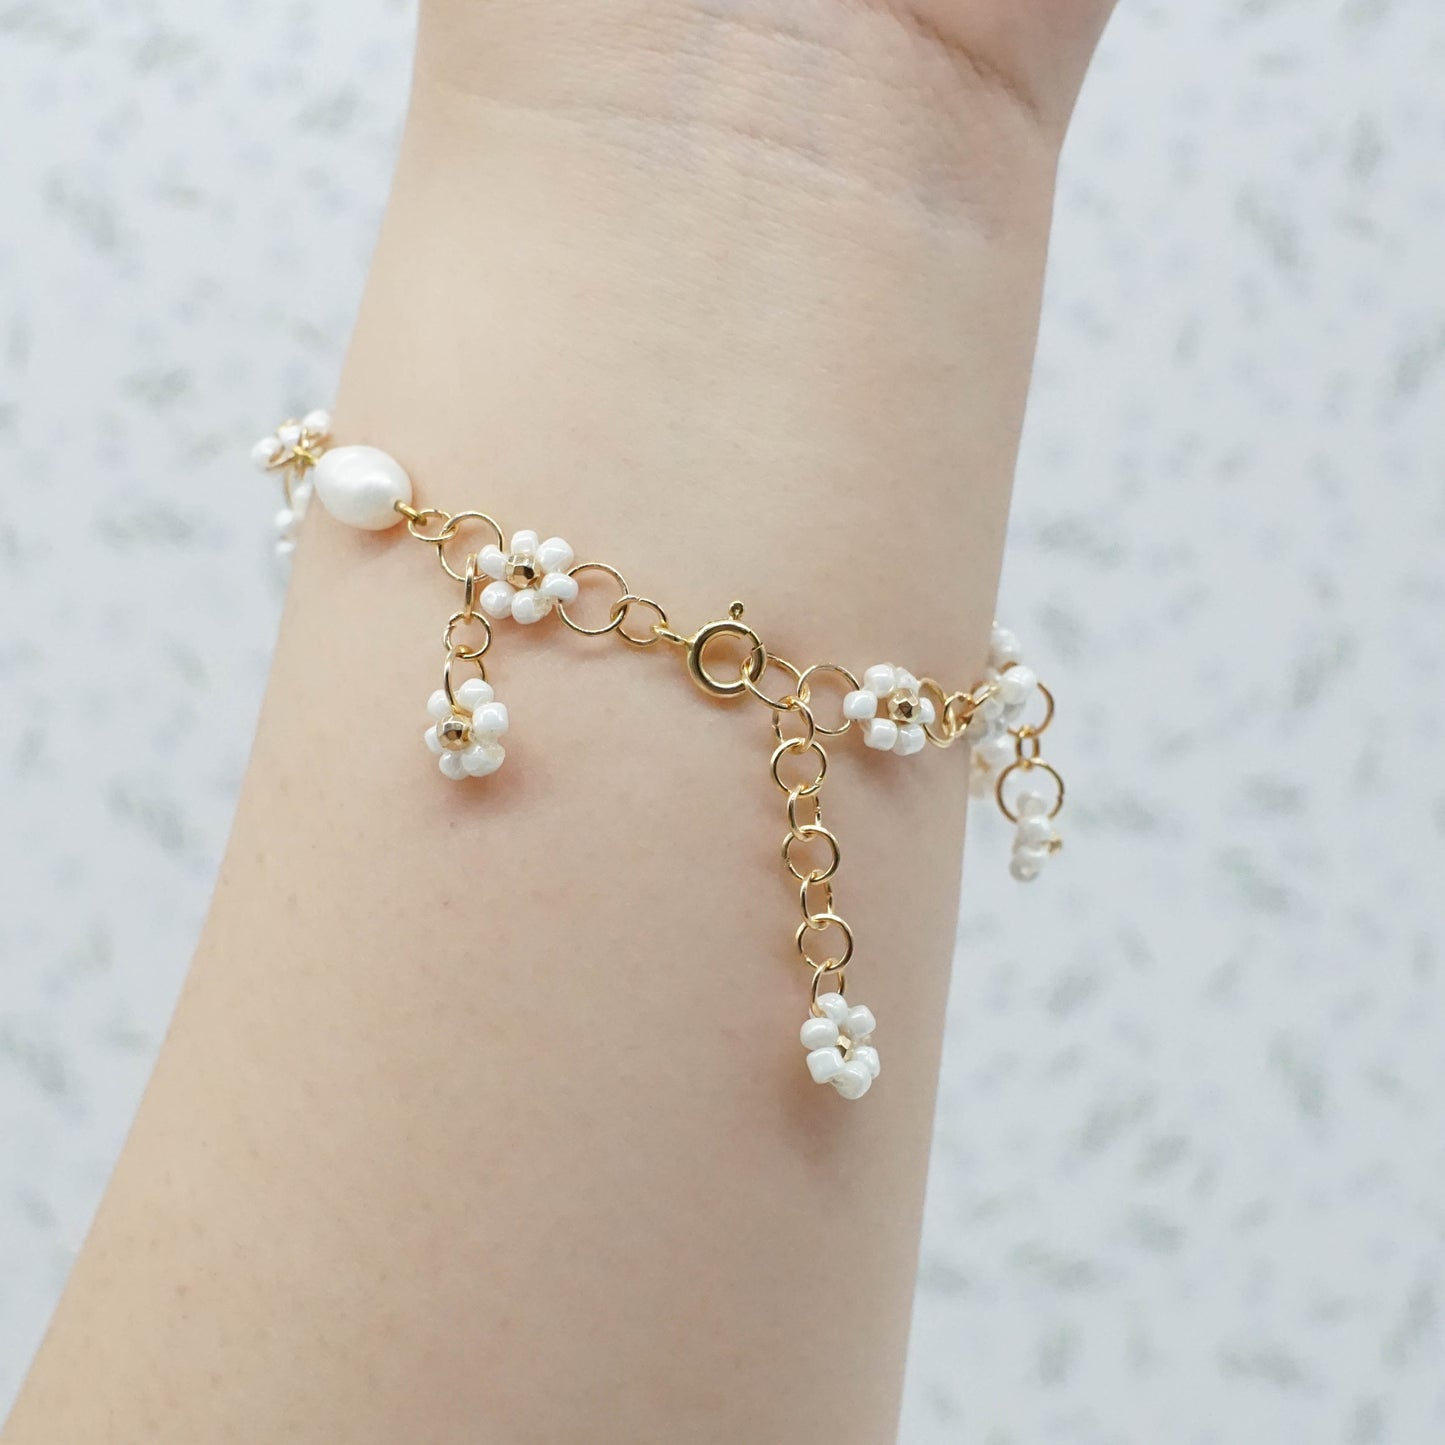 Flower Charm Bracelet - GOLDEN VINES